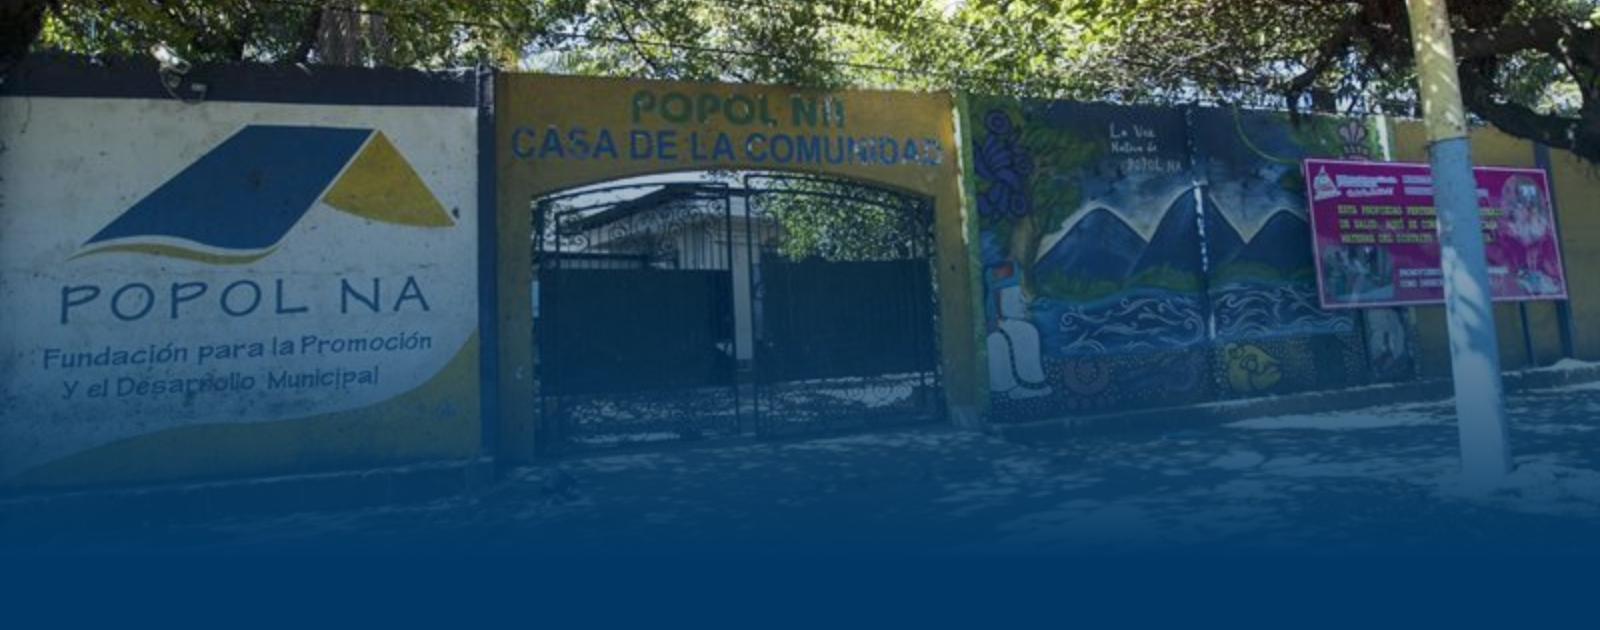 La demolición de las organizaciones civiles en Nicaragua